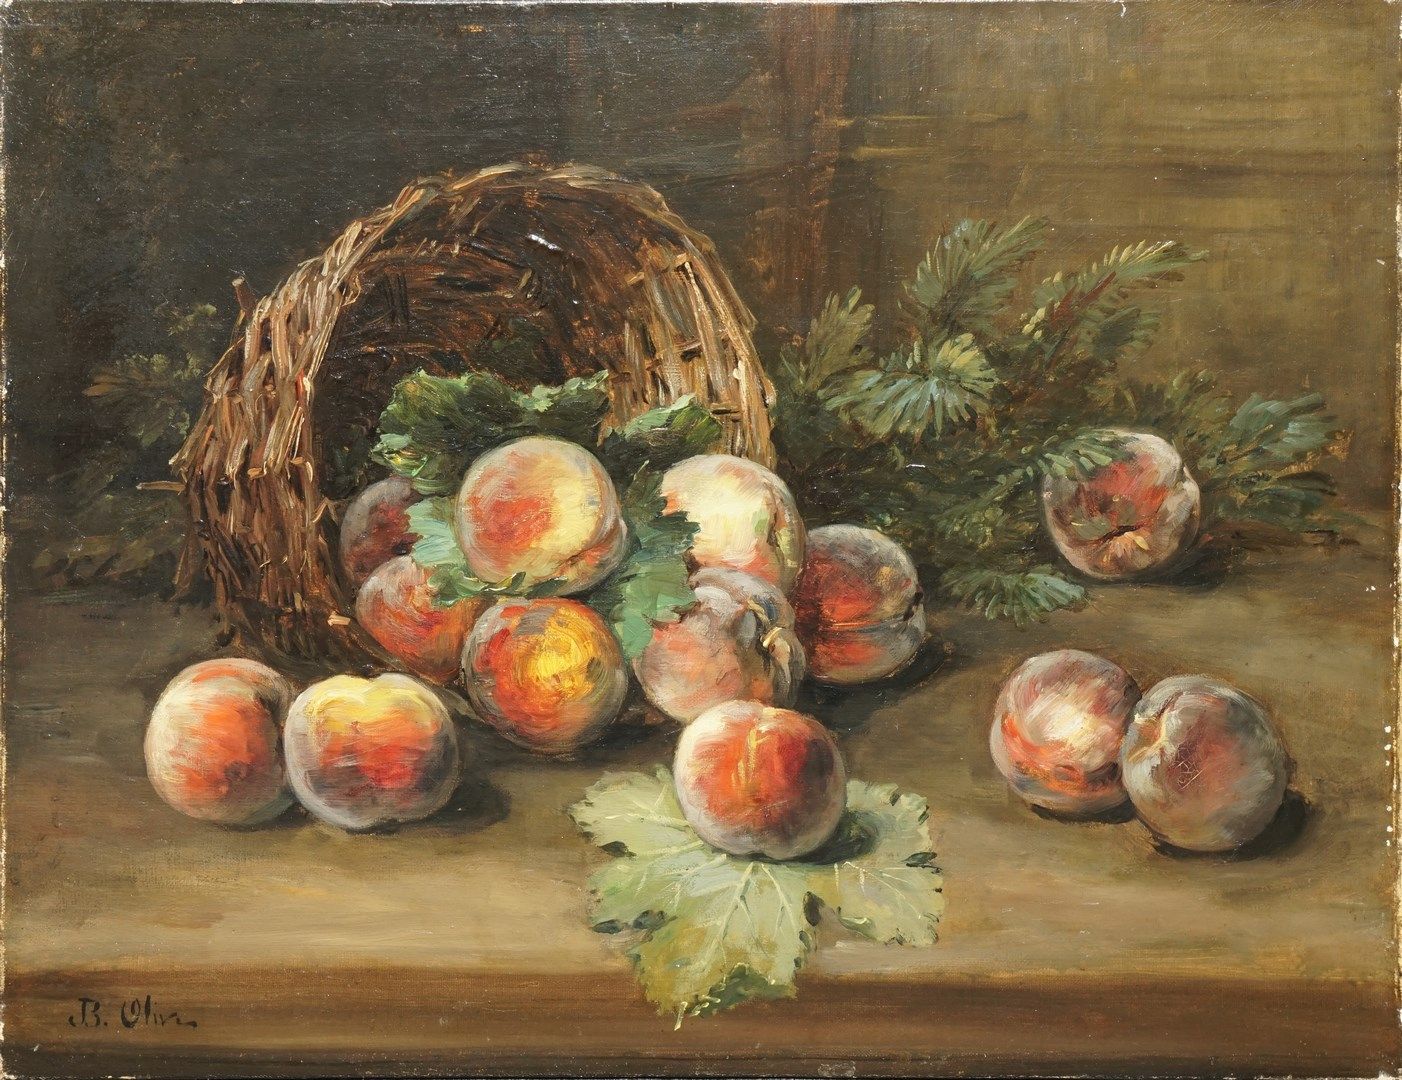 Null 奥利弗-让-巴蒂斯特，1848-1936

篮子里的桃子

布面油画（边缘有小的缺损，有一些修复）。

左下角有签名

50 x 65厘米